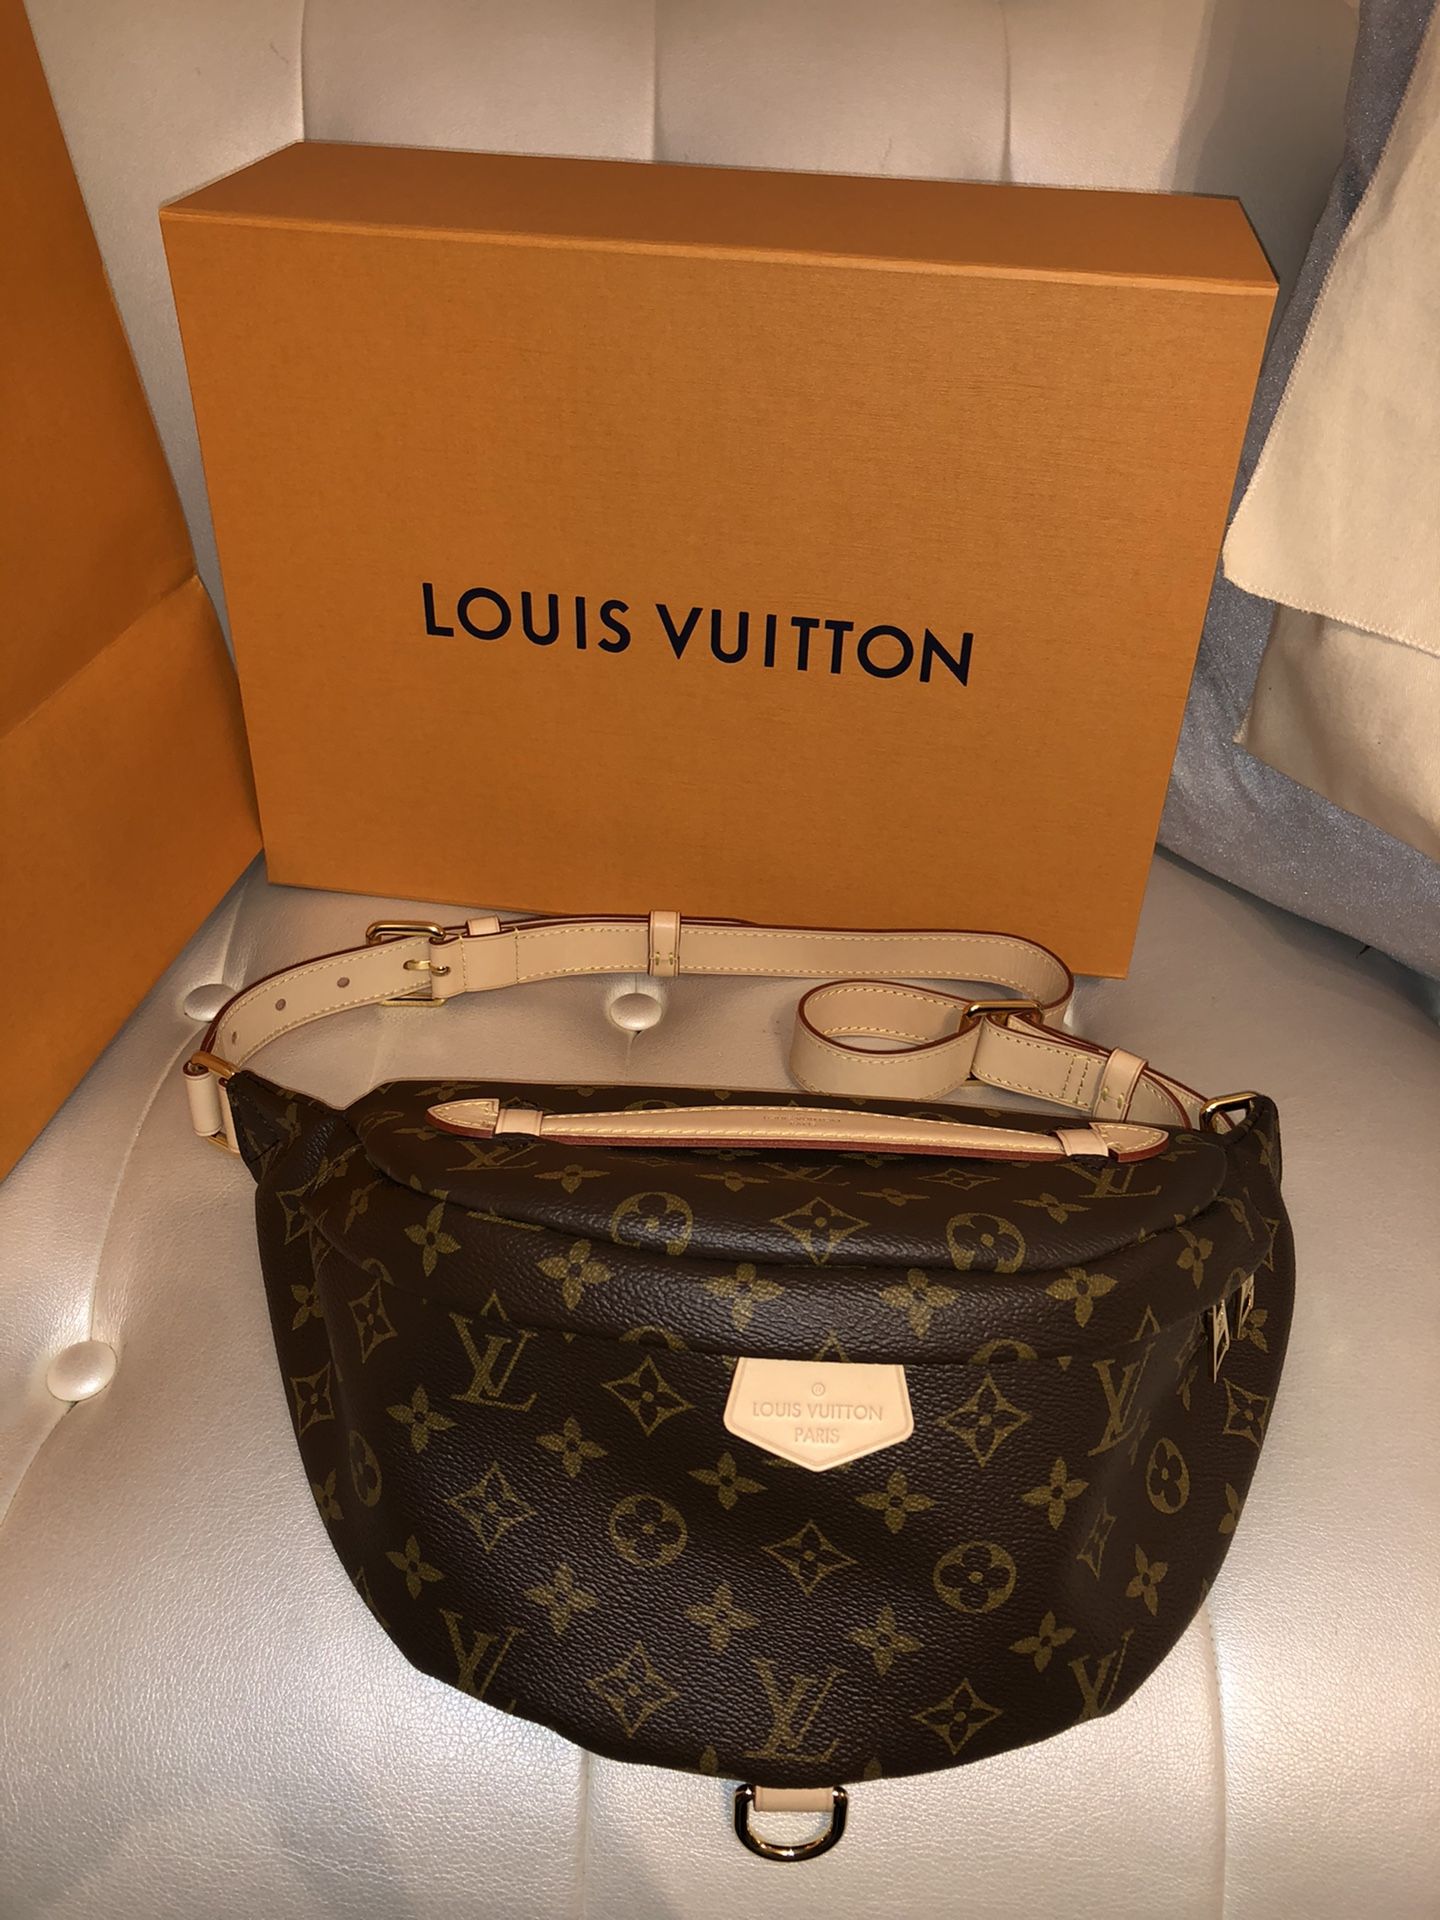 Louis Vuitton Bum Bag (authentic with box, dust bag, & receipt)